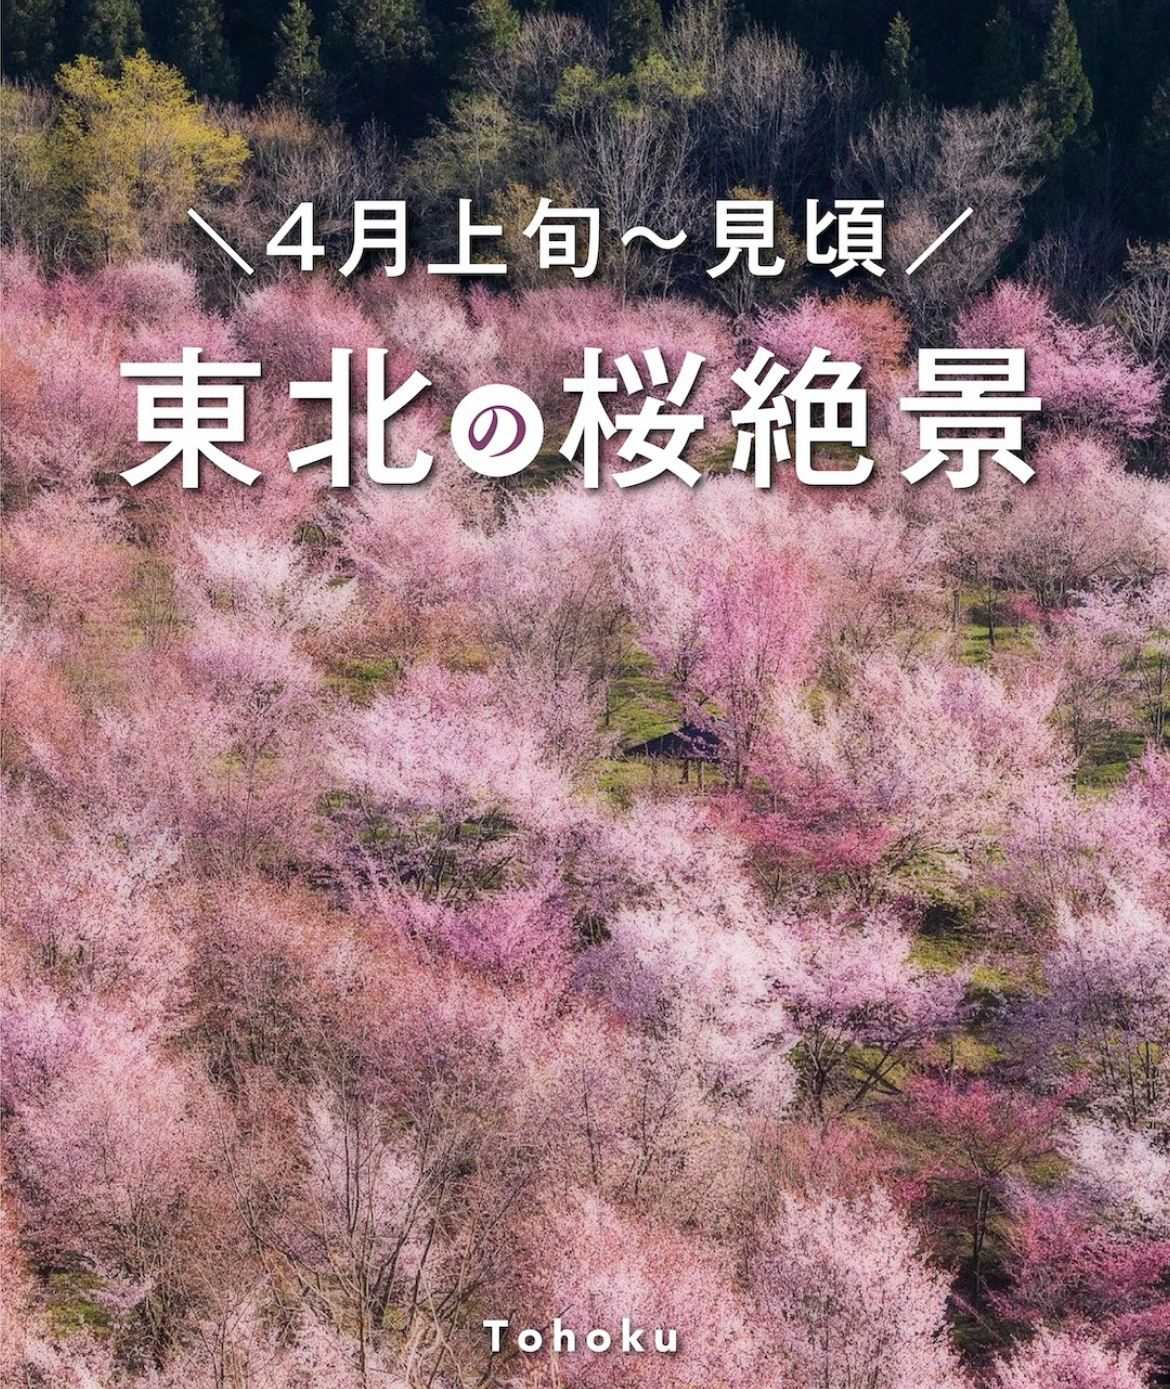 四月份去日本赏樱好去处/小众旅行地